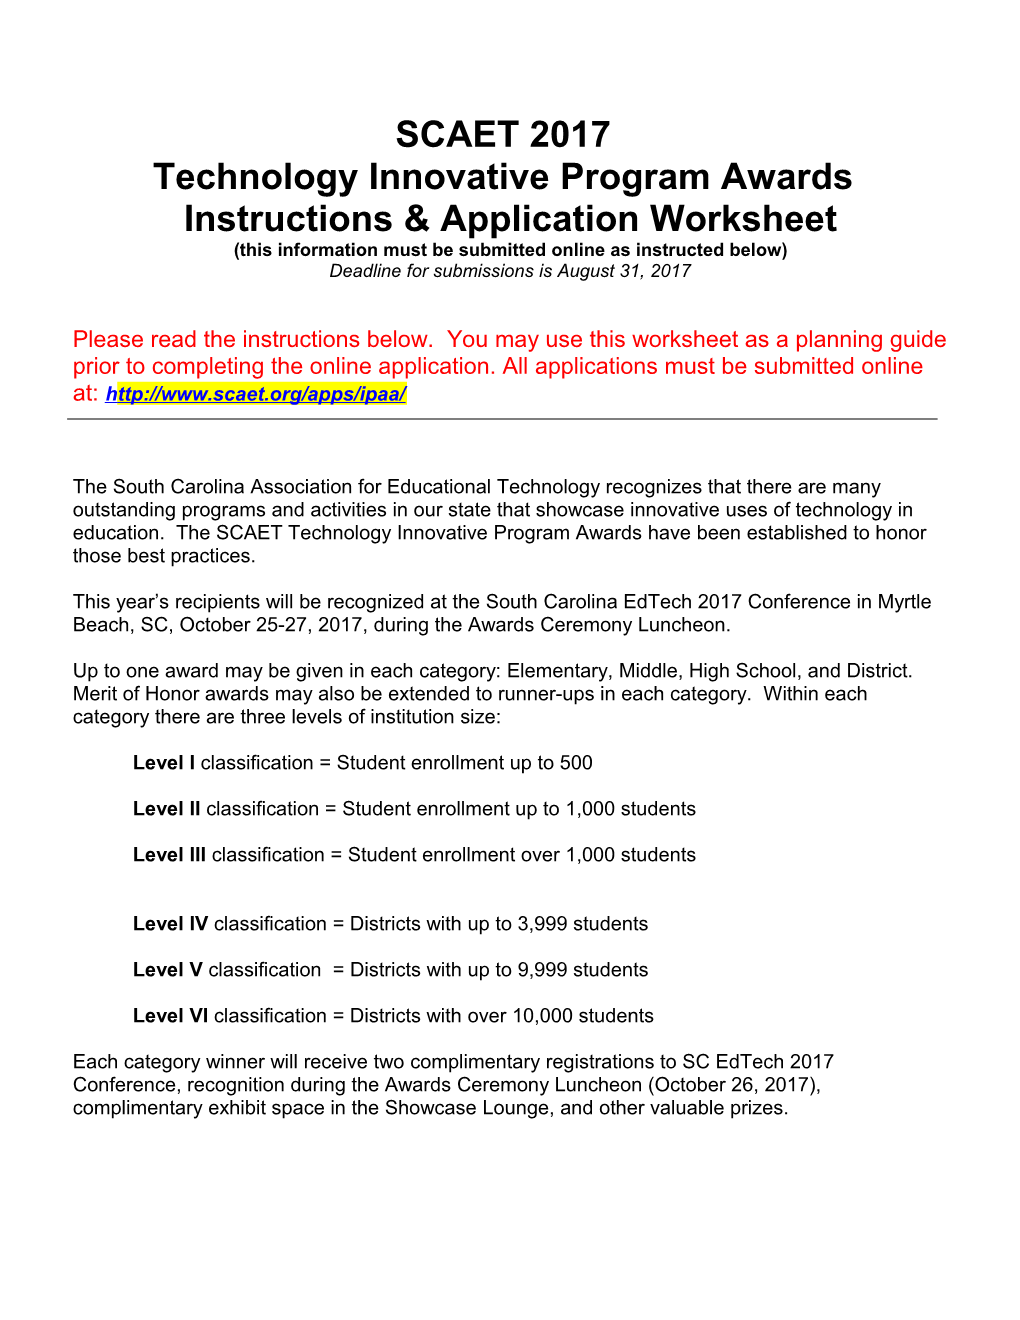 Technology Innovative Program Awards